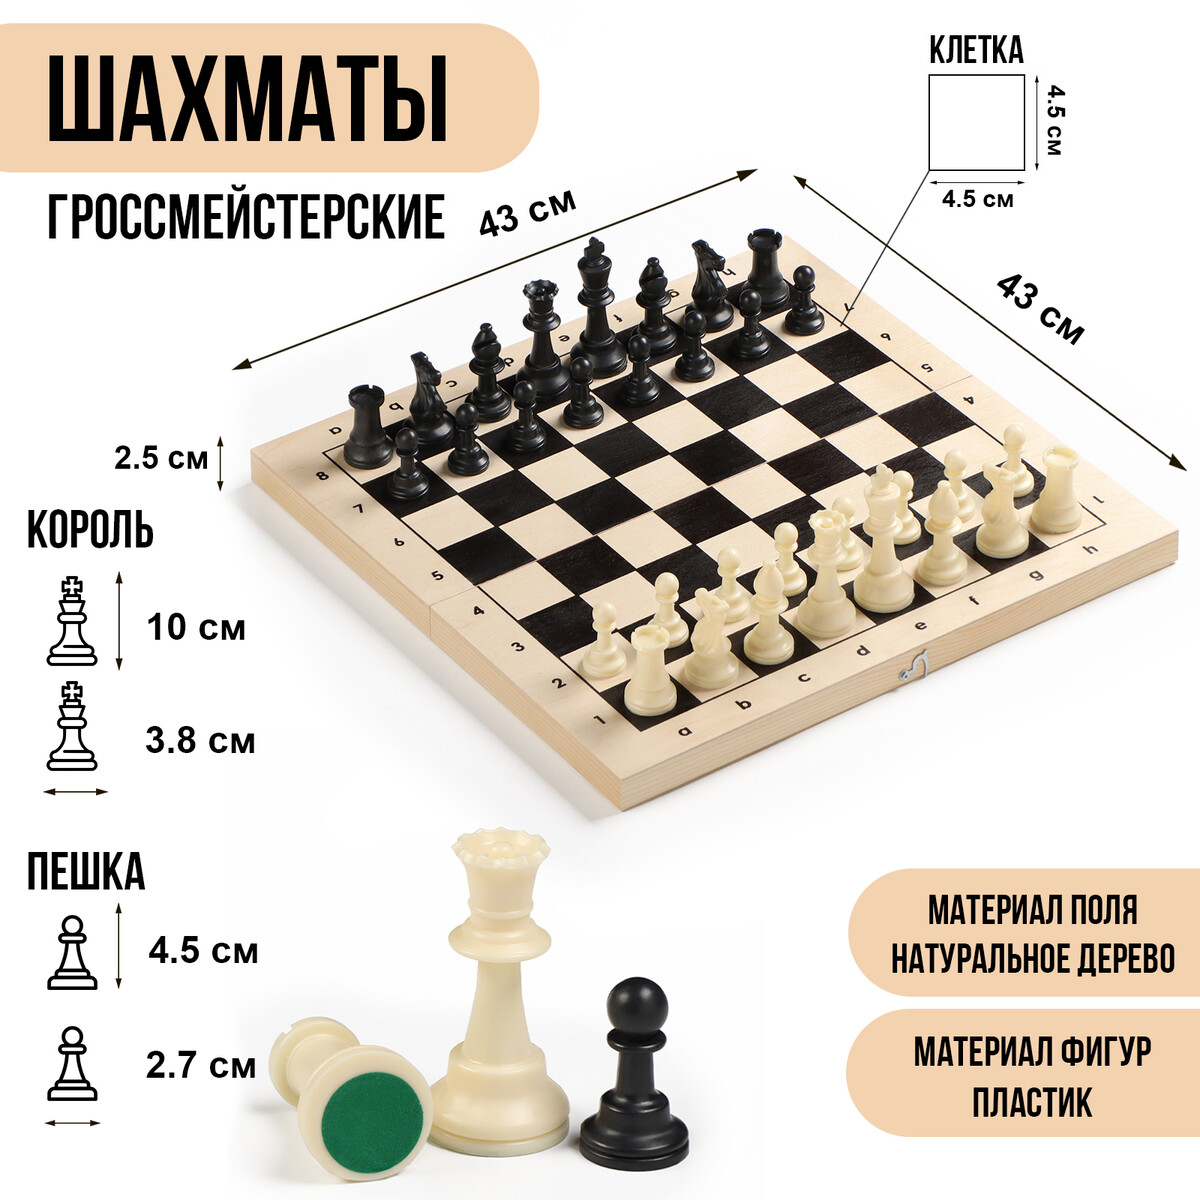 Шахматы гроссмейстерские, турнирные 43х43 см, фигуры пластик, король h-10 см, пешка h=4.5 см шахматы я учусь играть